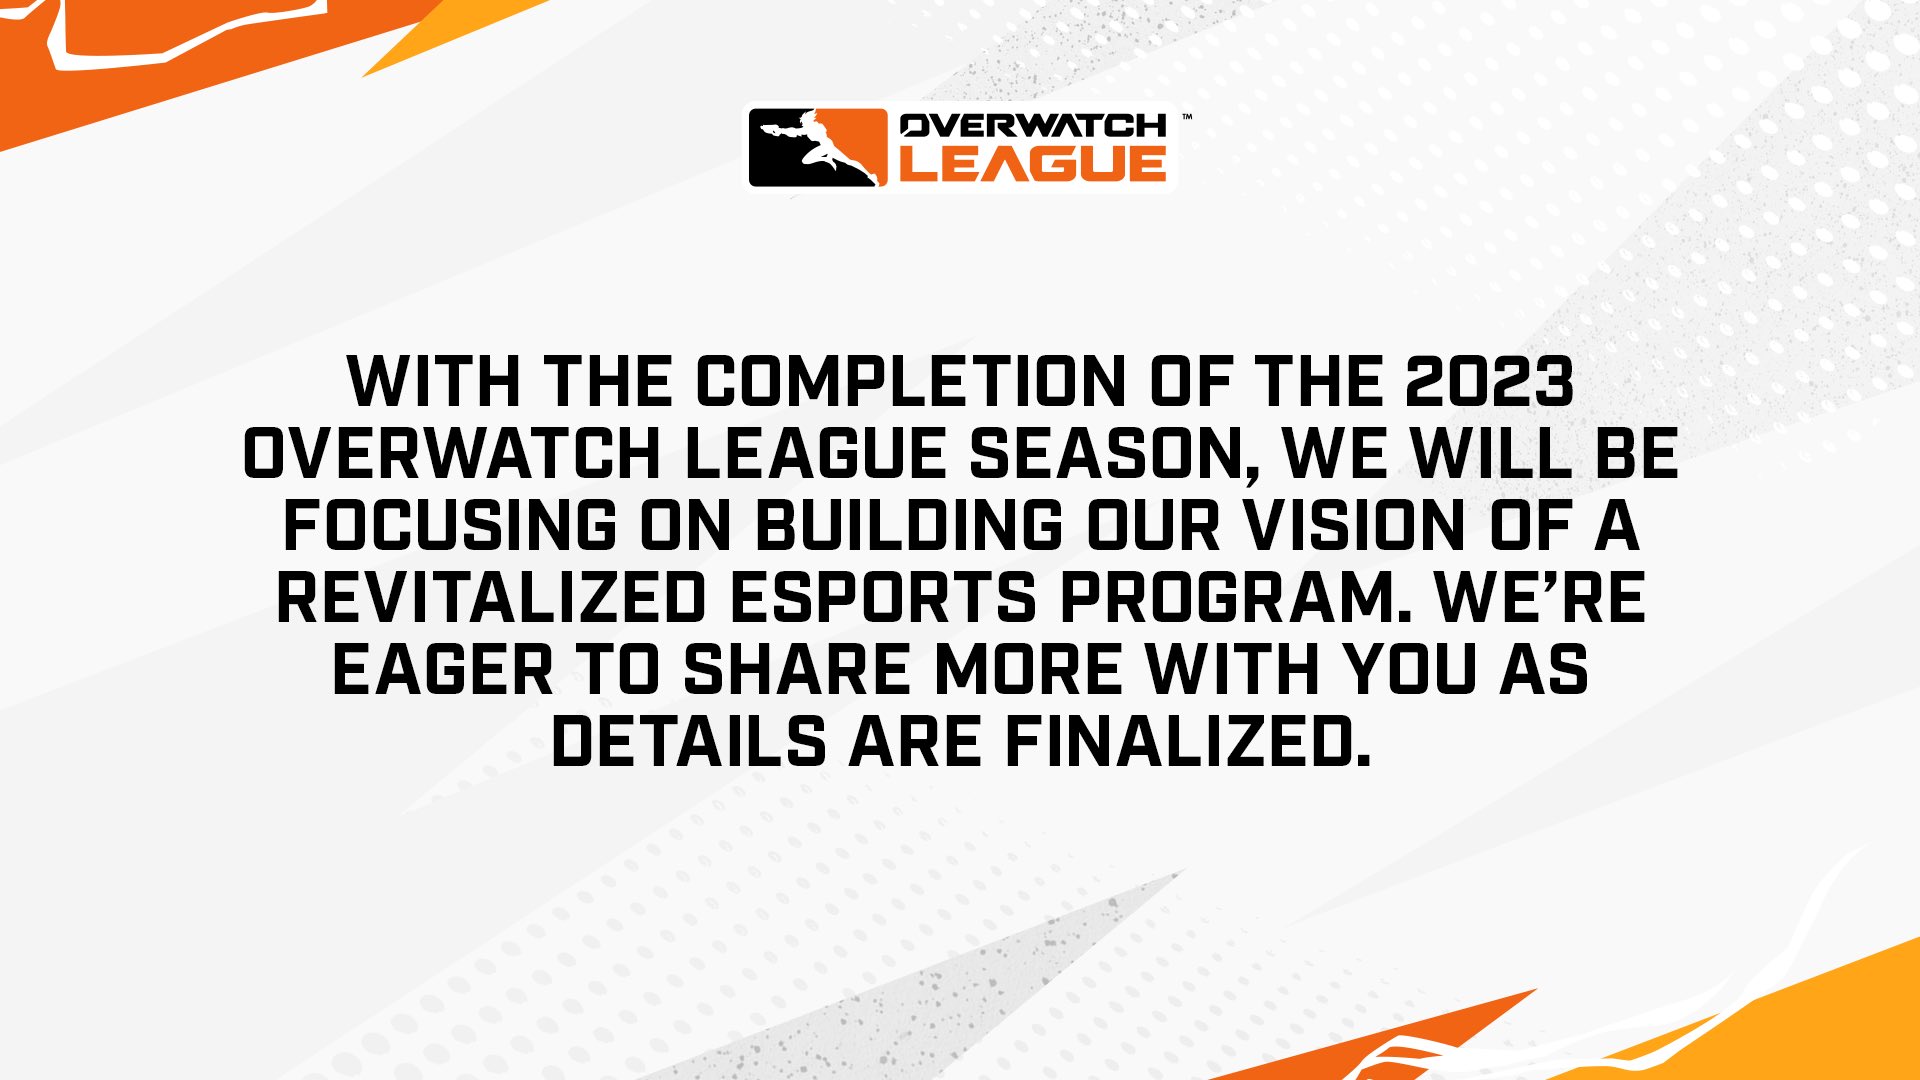 Avec l’achèvement de la saison 2023 de l’Overwatch League, nous nous concentrerons sur la construction de notre vision d’un programme d’esports revitalisé.  Nous sommes impatients de partager davantage avec vous à mesure que les détails seront finalisés.